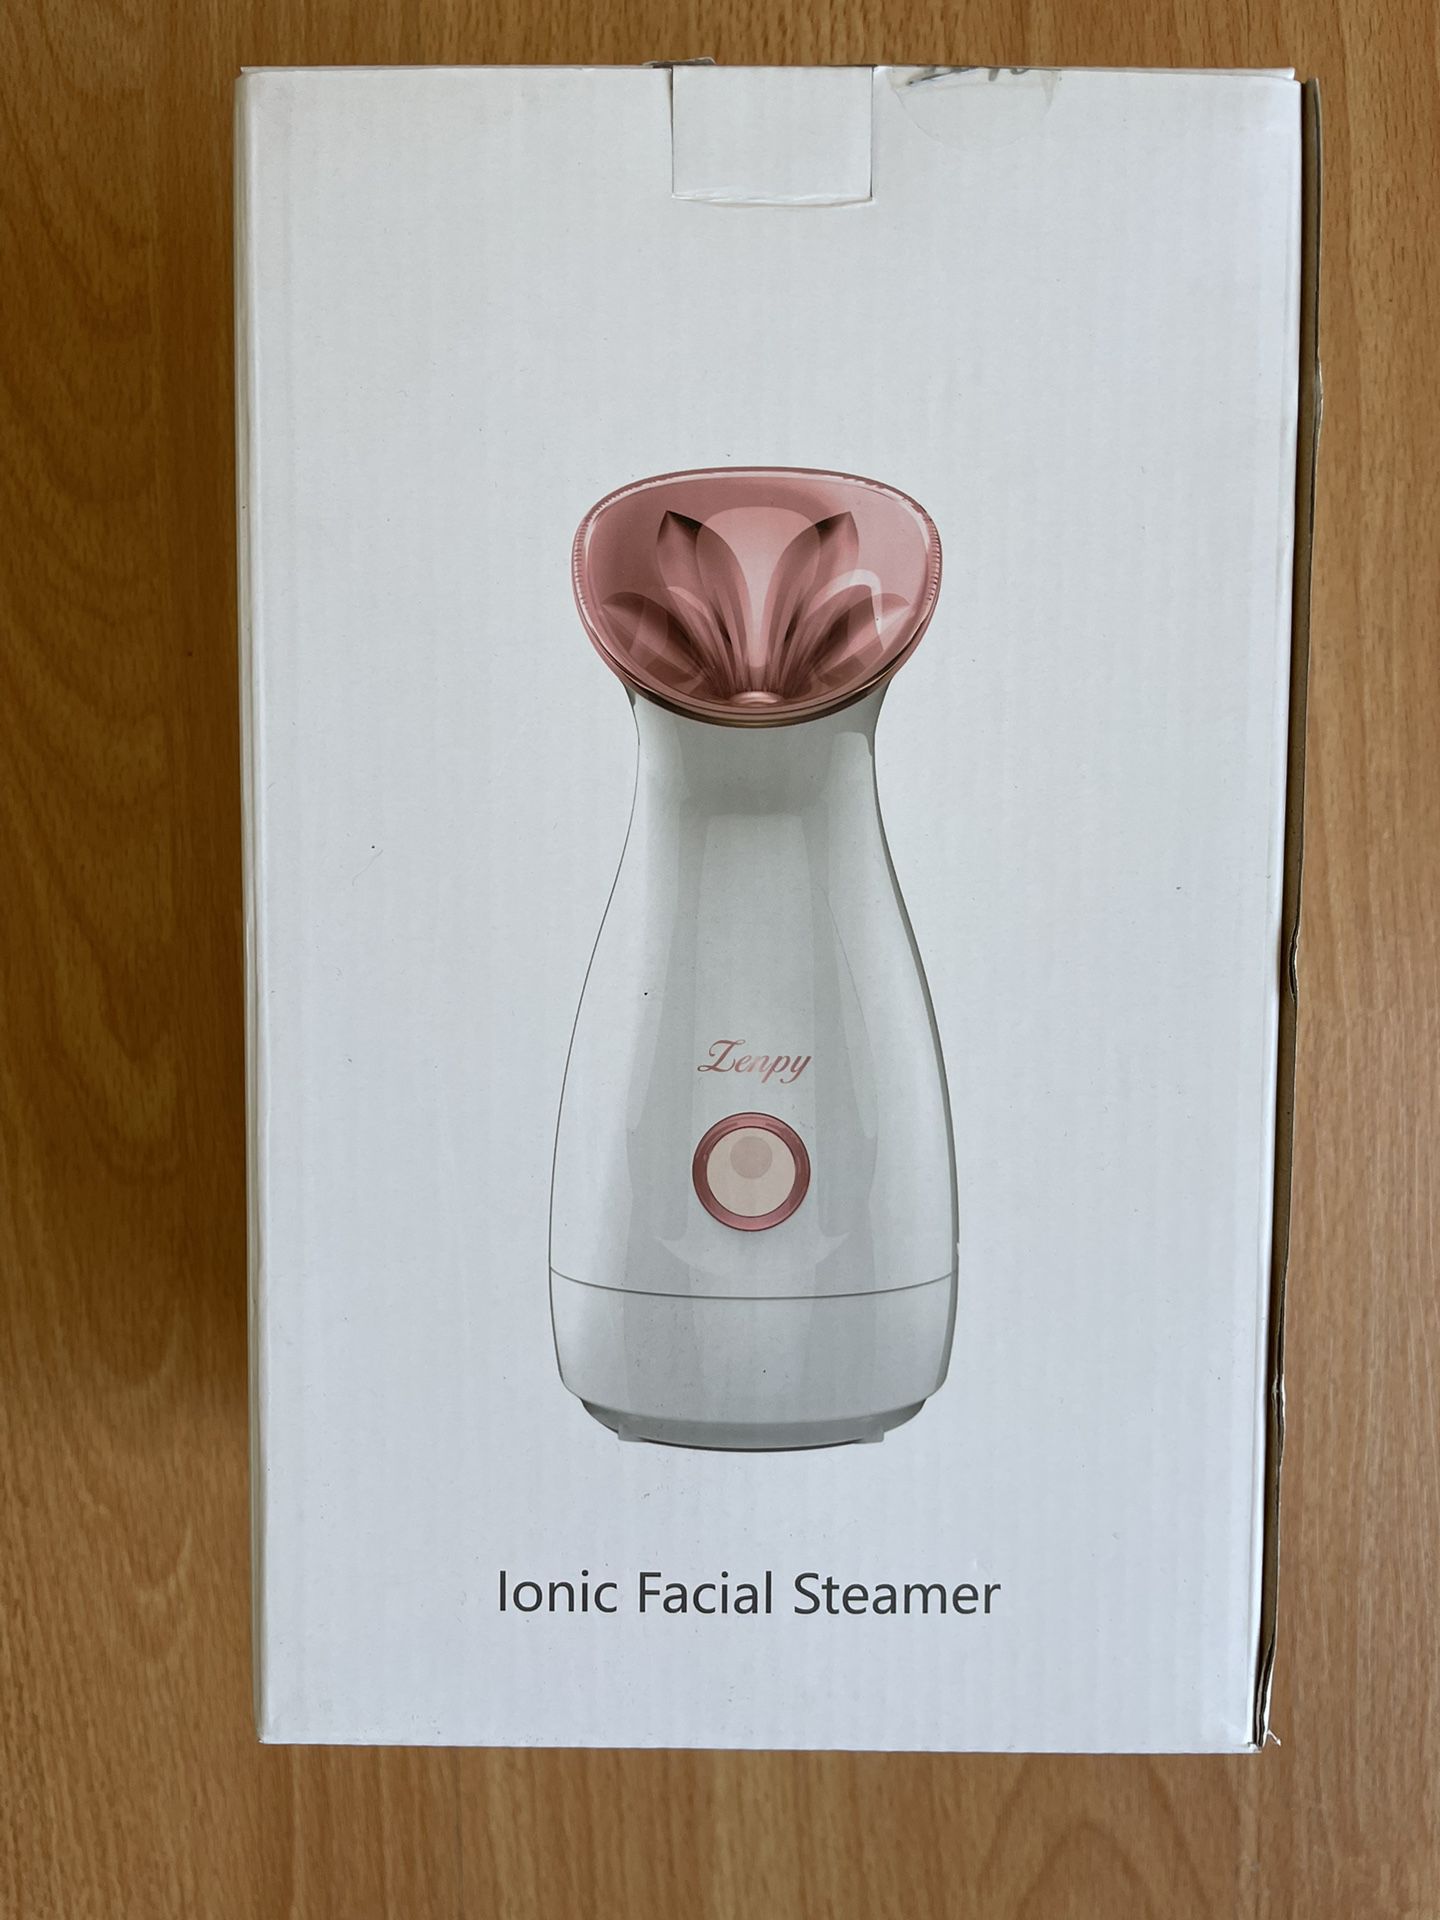 Lenpy facial steamer